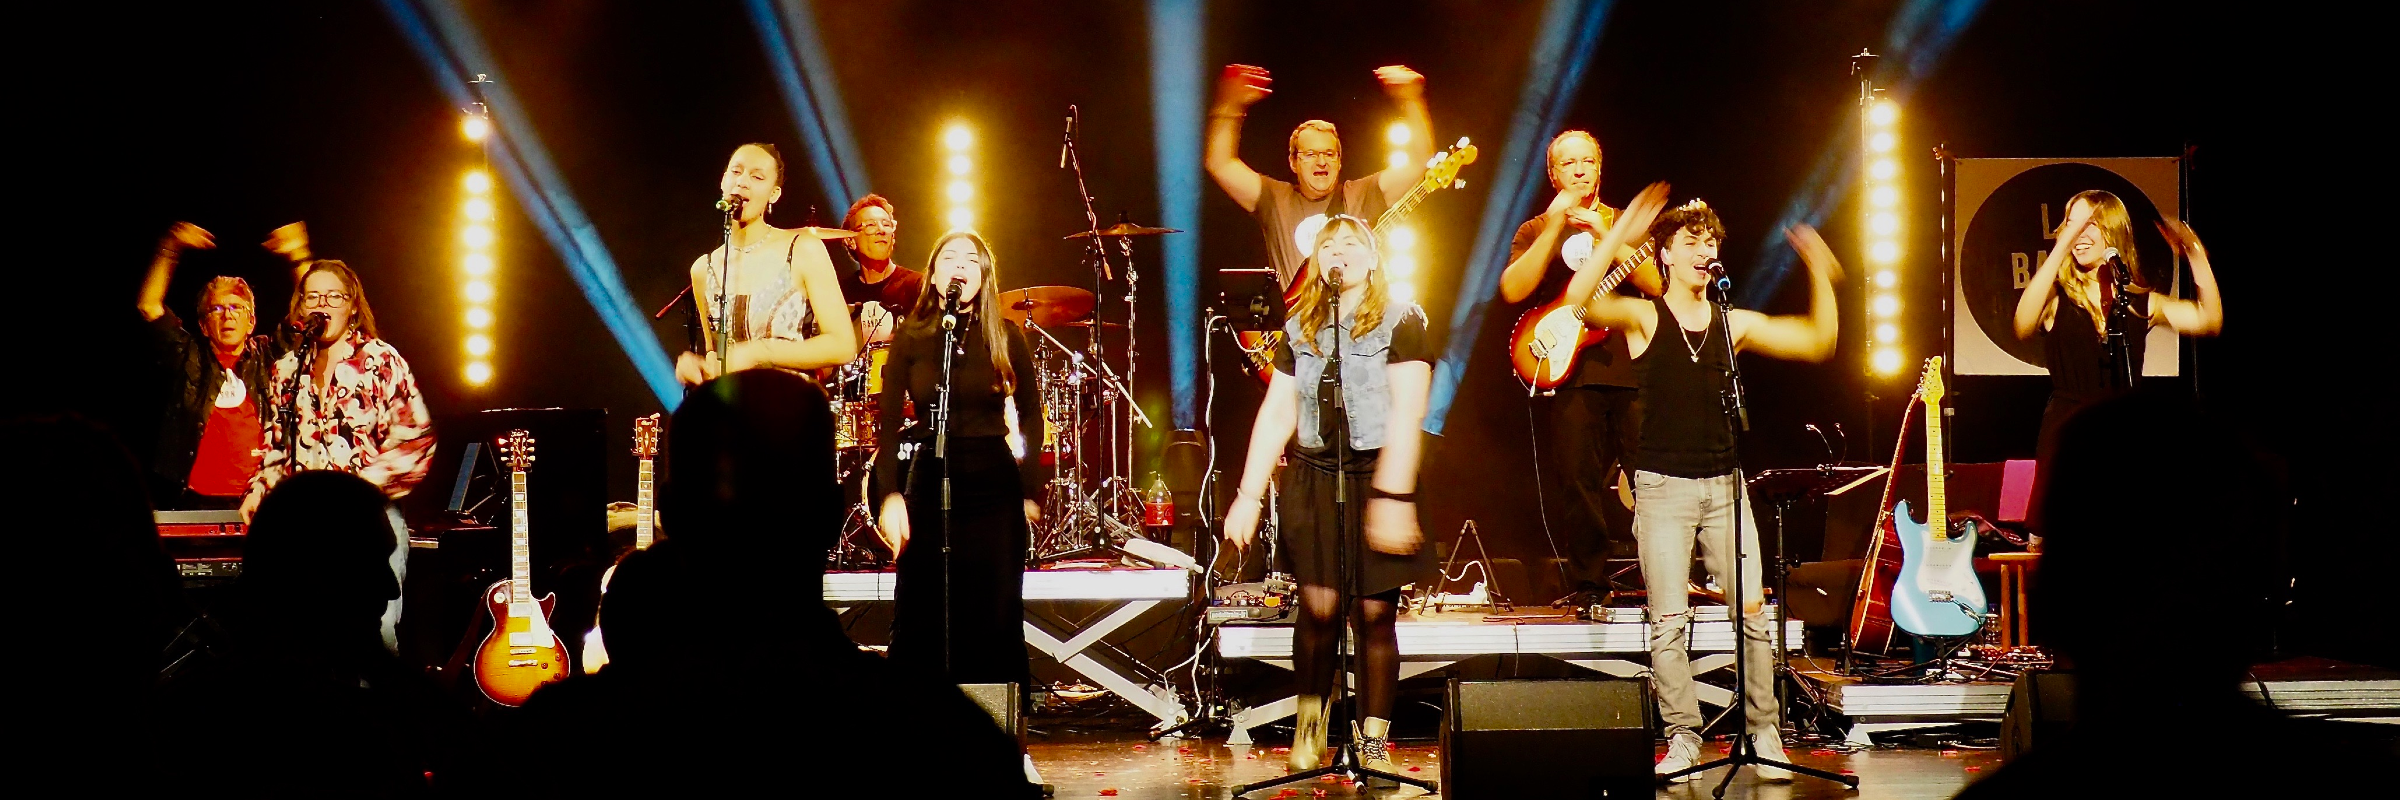 La Bande Son, groupe de musique Pop en représentation à Bas Rhin - photo de couverture